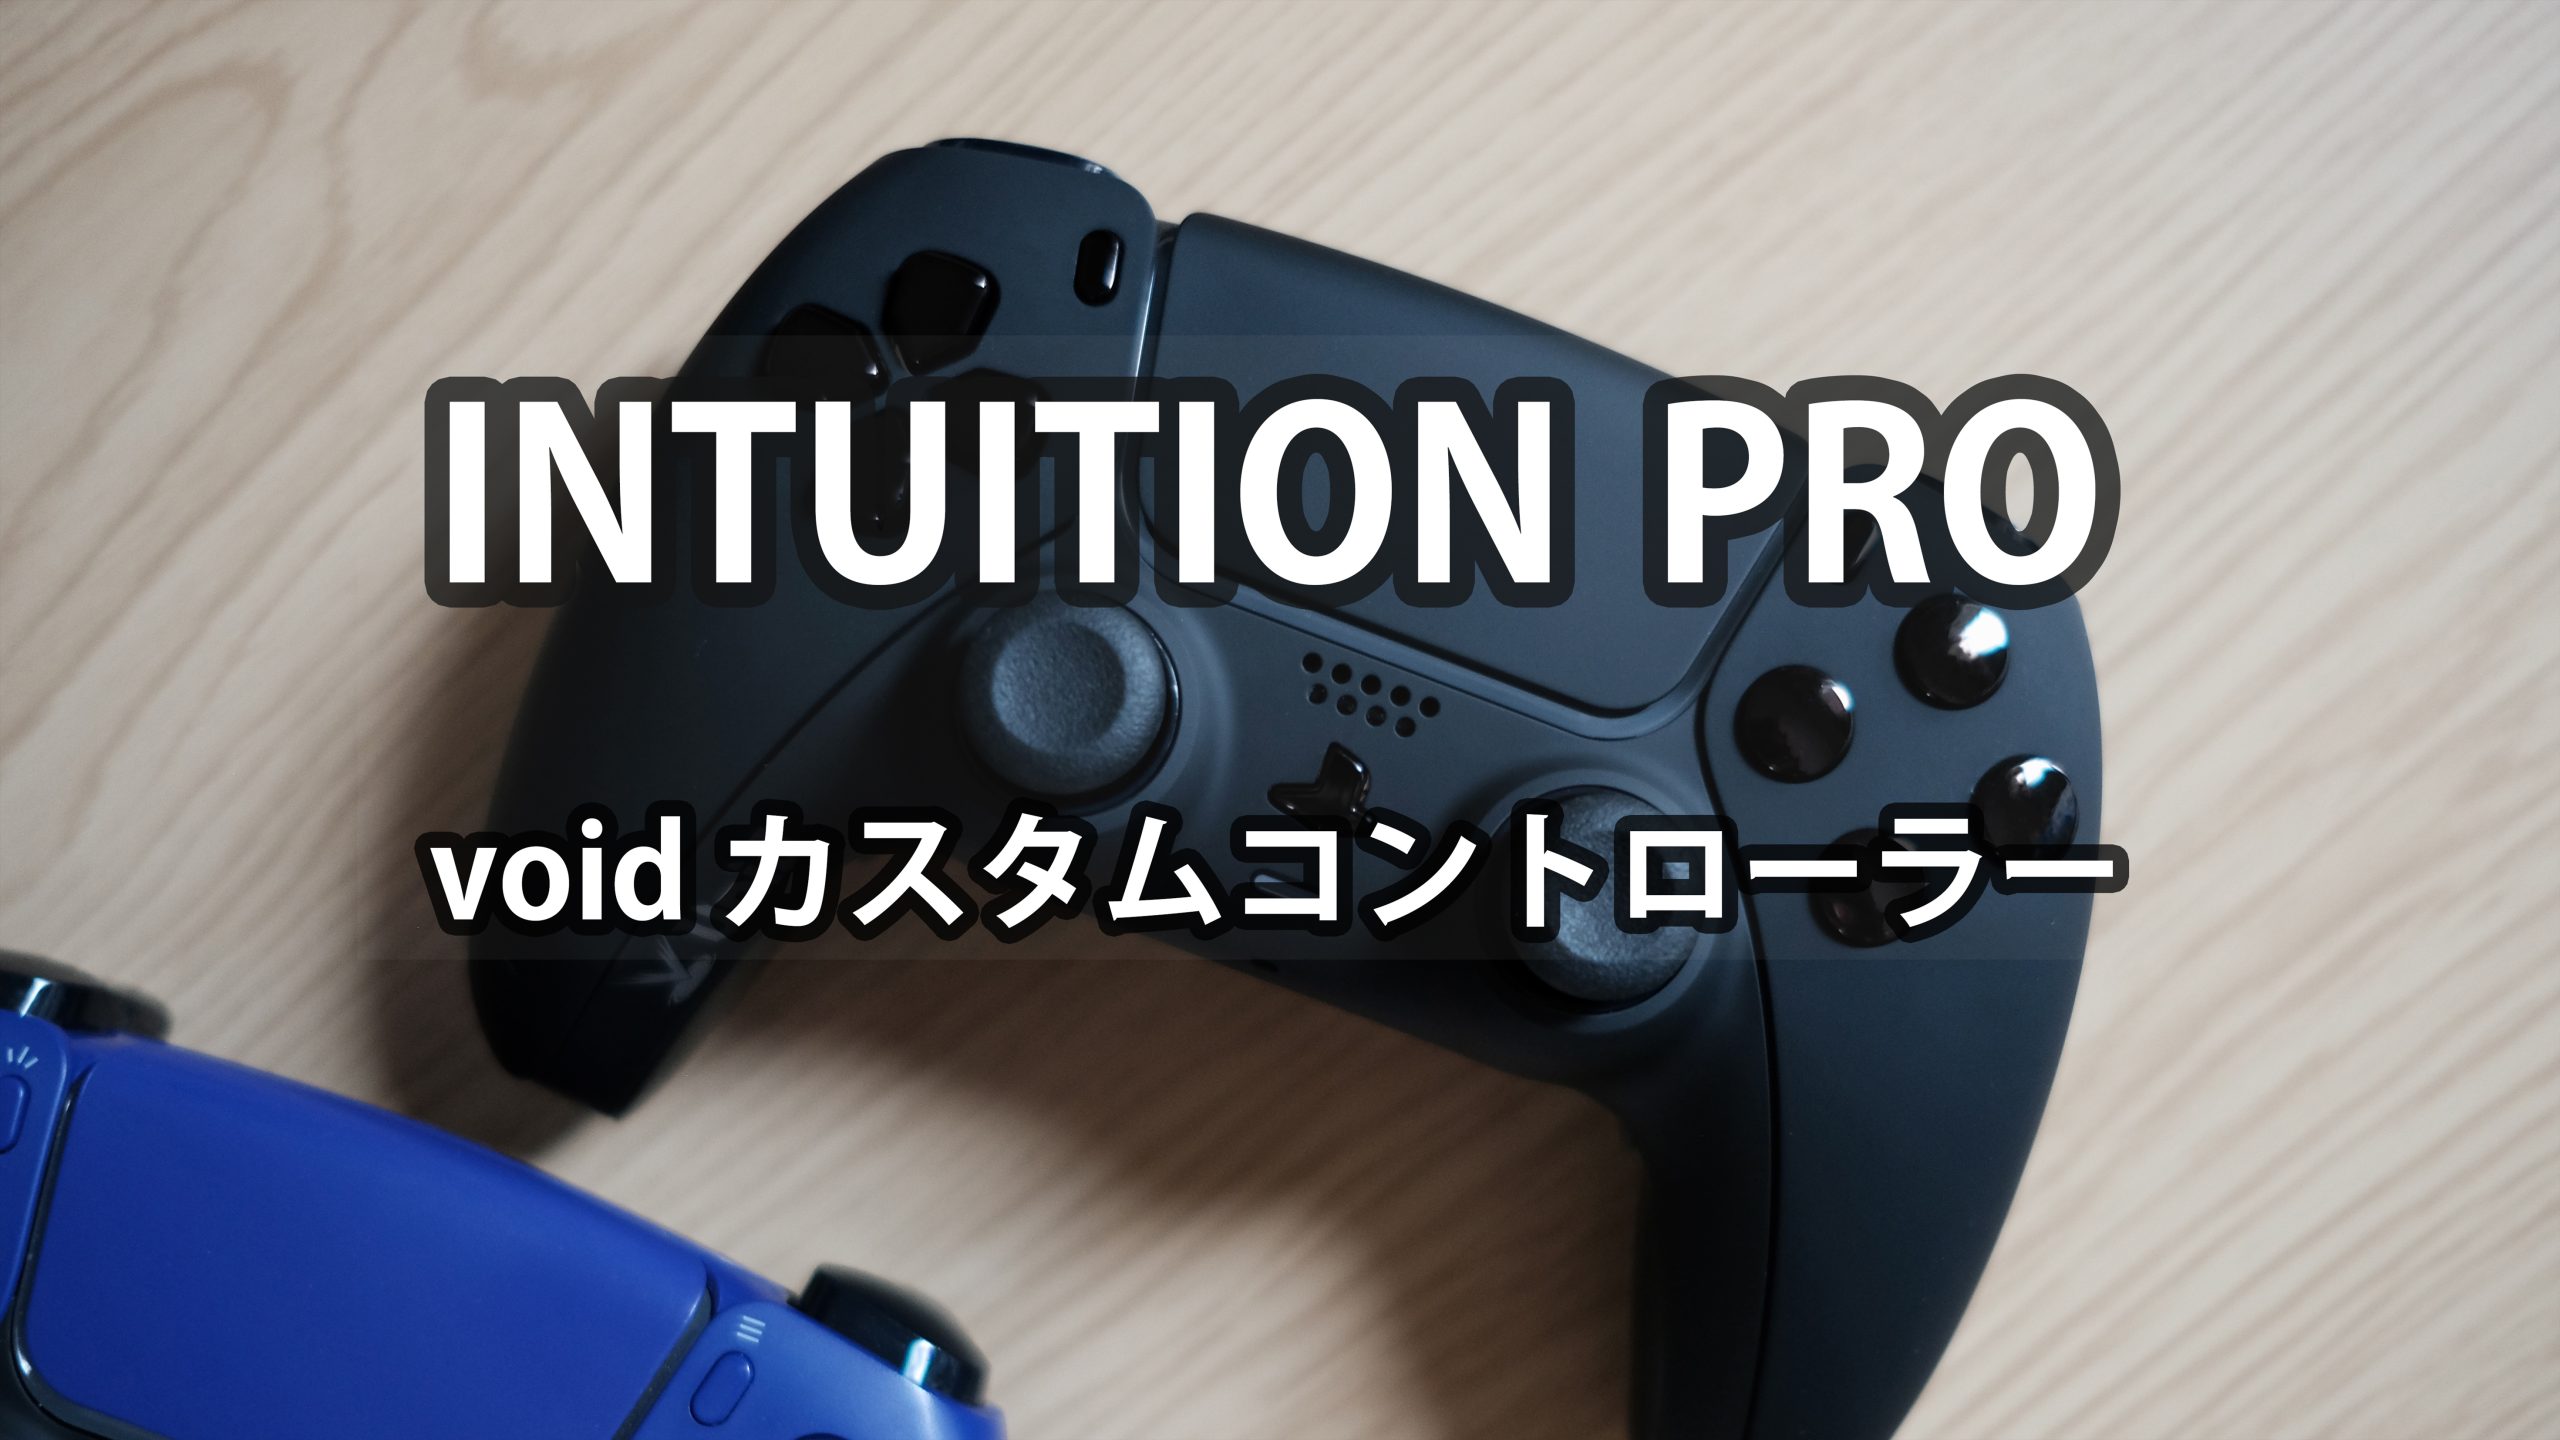 [PR] INTUITION PRO Void Gaming | カスタムコントローラーに触れて